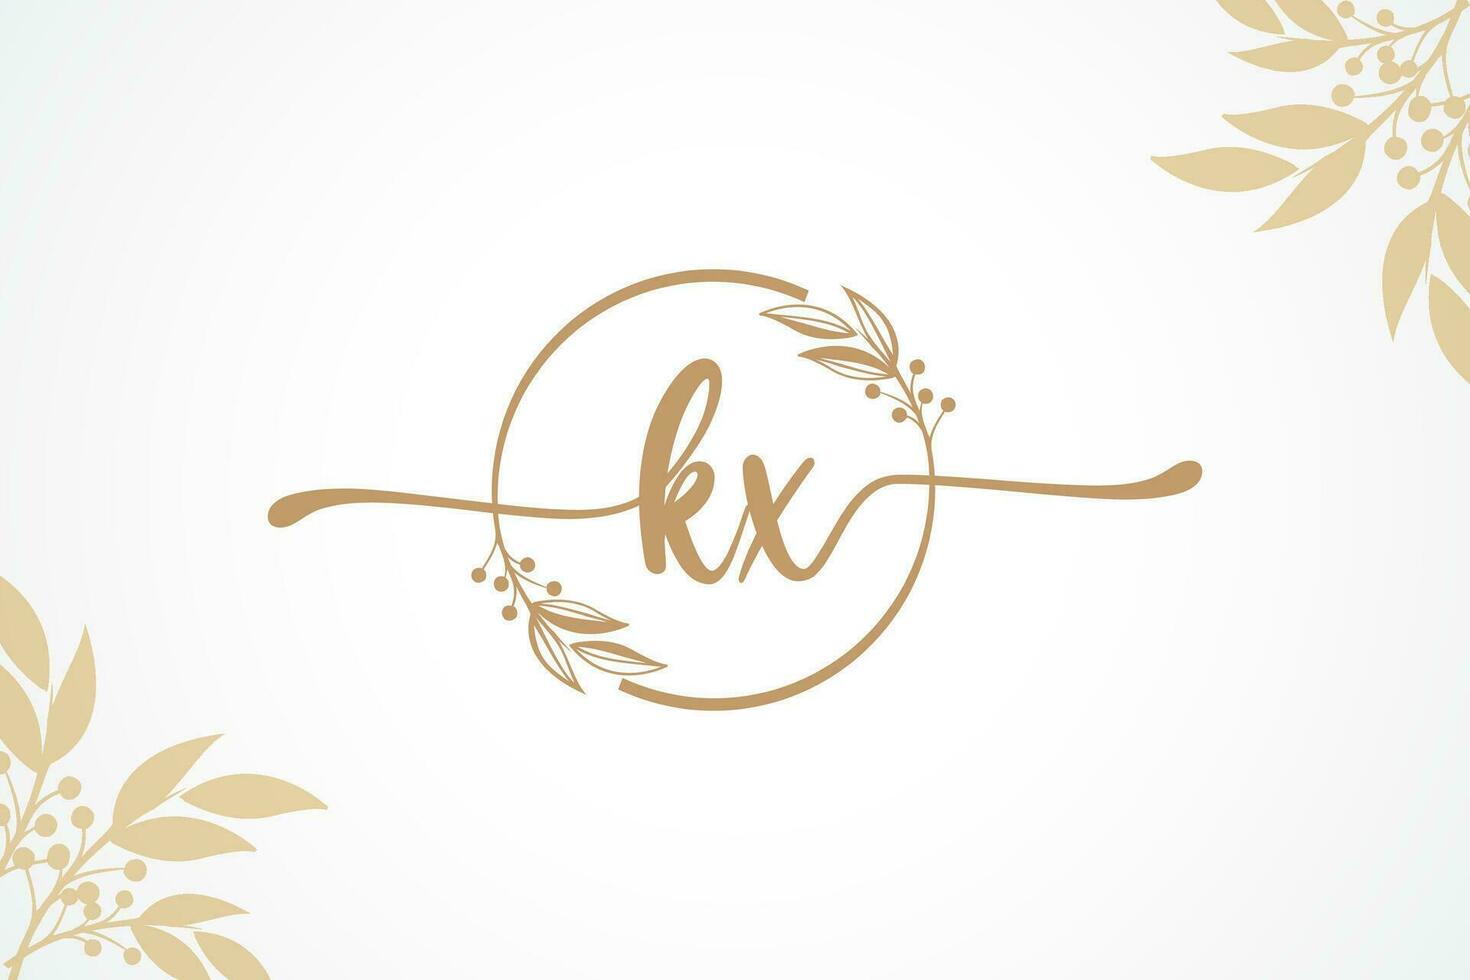 Luxus Gold Unterschrift Initiale kx Logo Design isoliert Blatt und Blume vektor